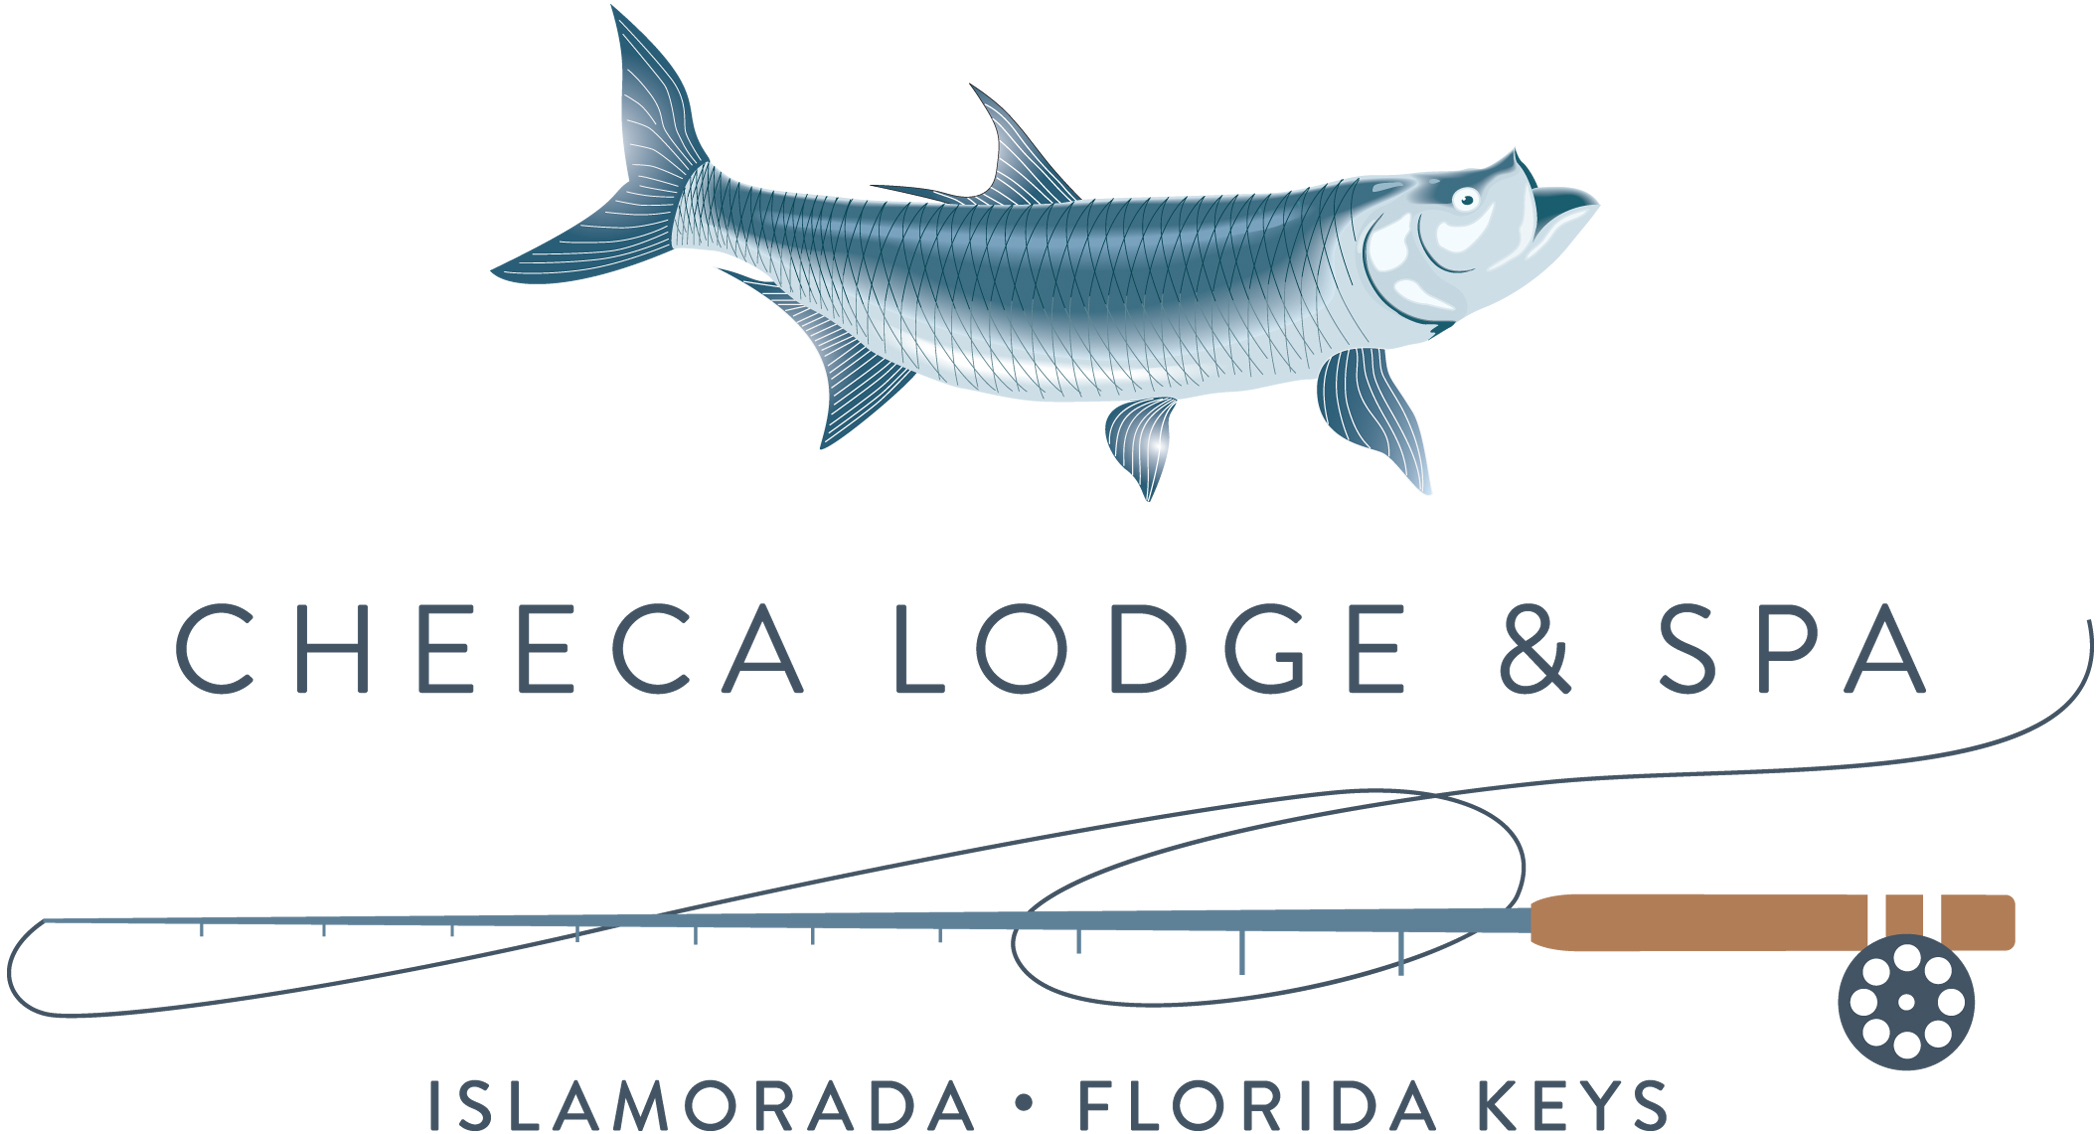 Cheeca Lodge & Spa